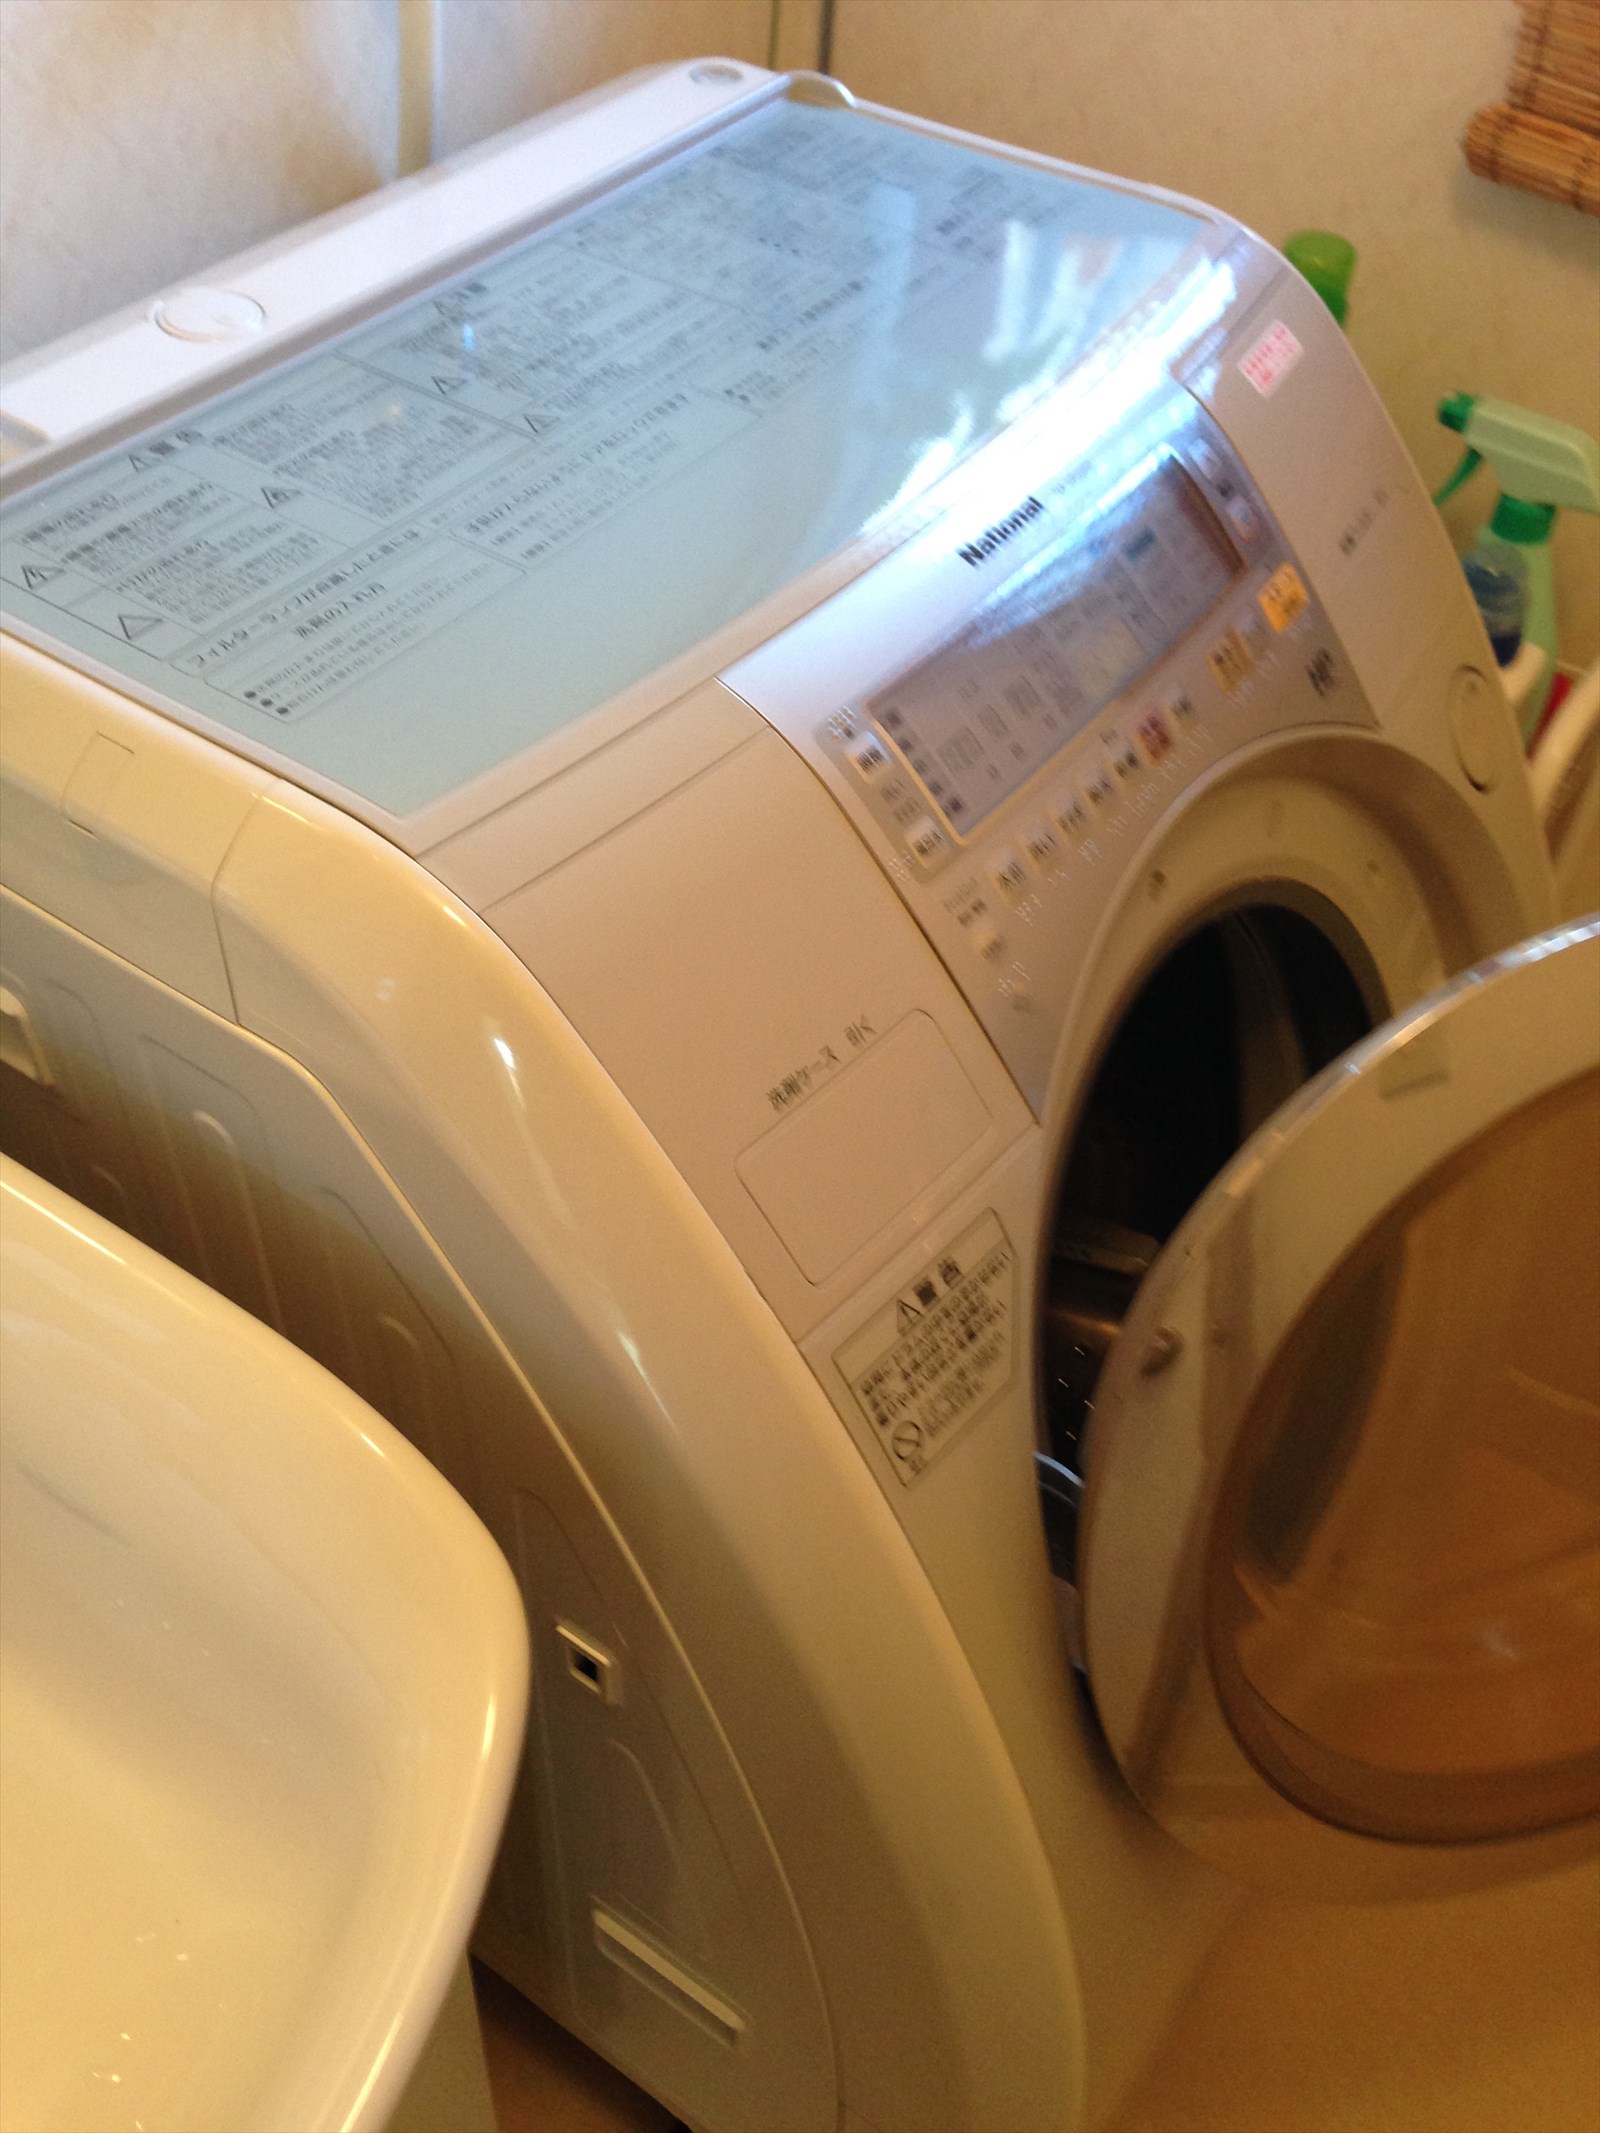 ナショナル 斜めドラム洗濯機 VR1000 液体洗剤が残る - 店長の日記２